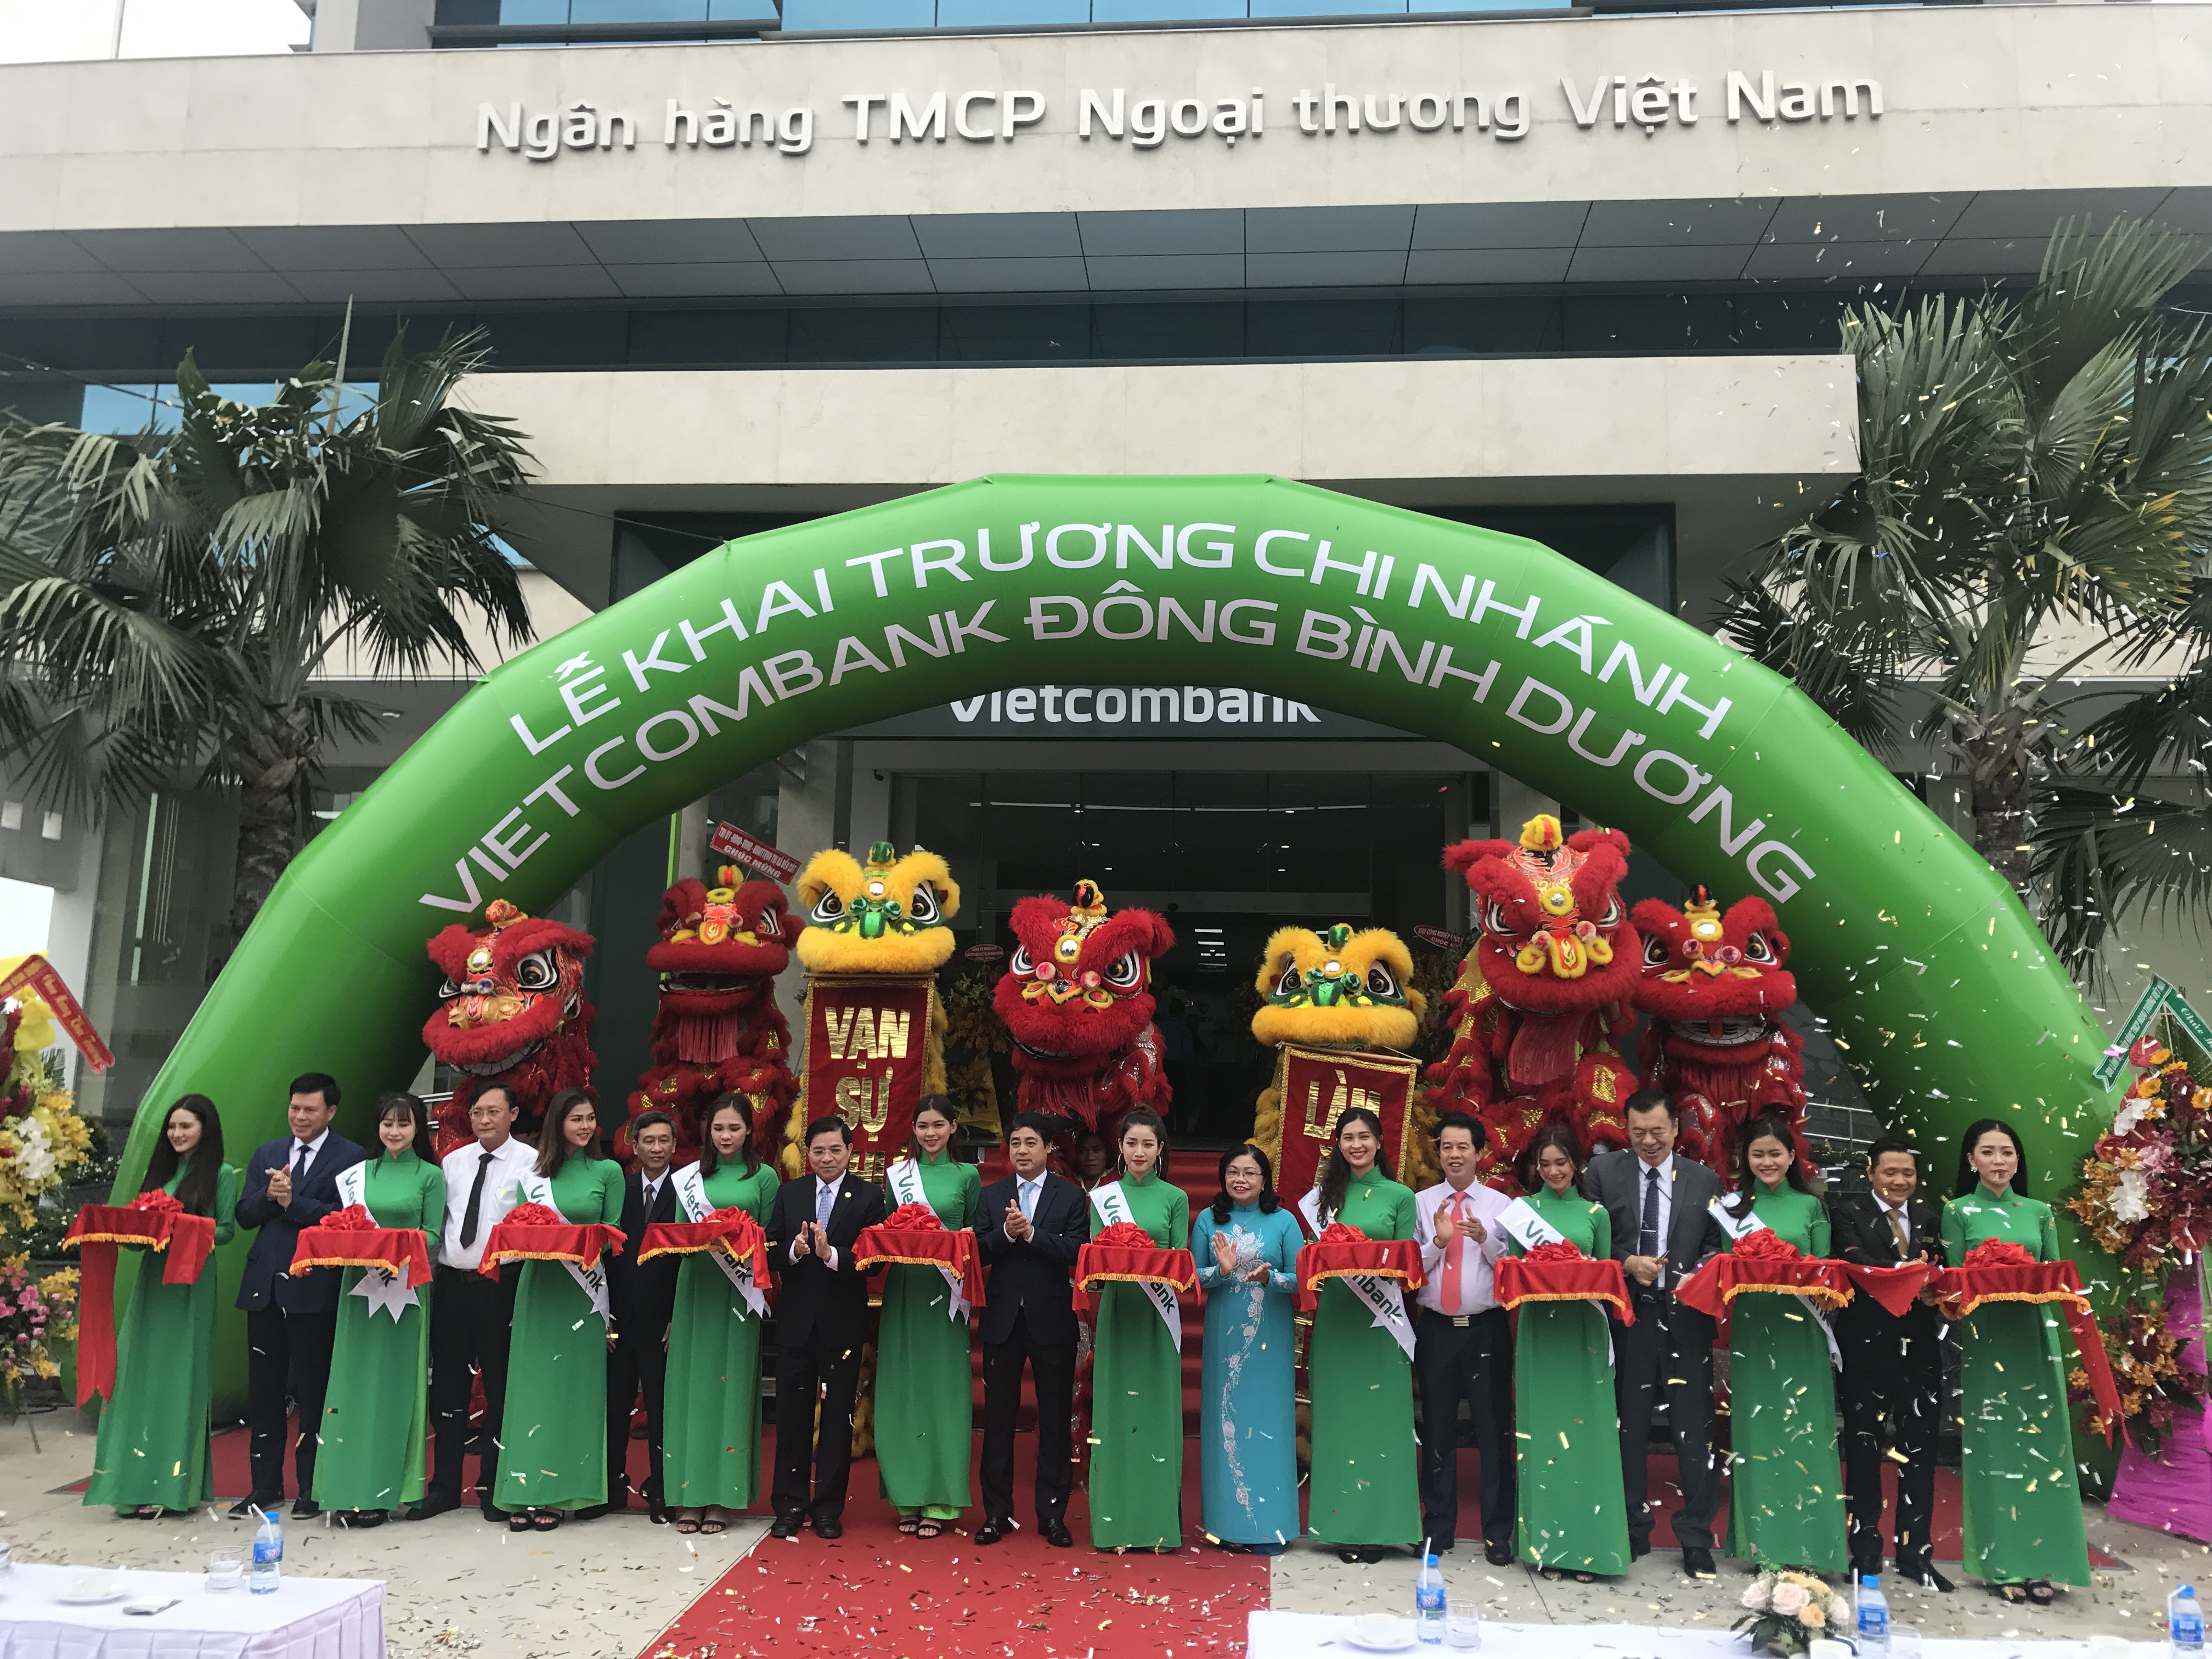 Vietcombank khai trương hoạt động Chi nhánh Đông Bình Dương